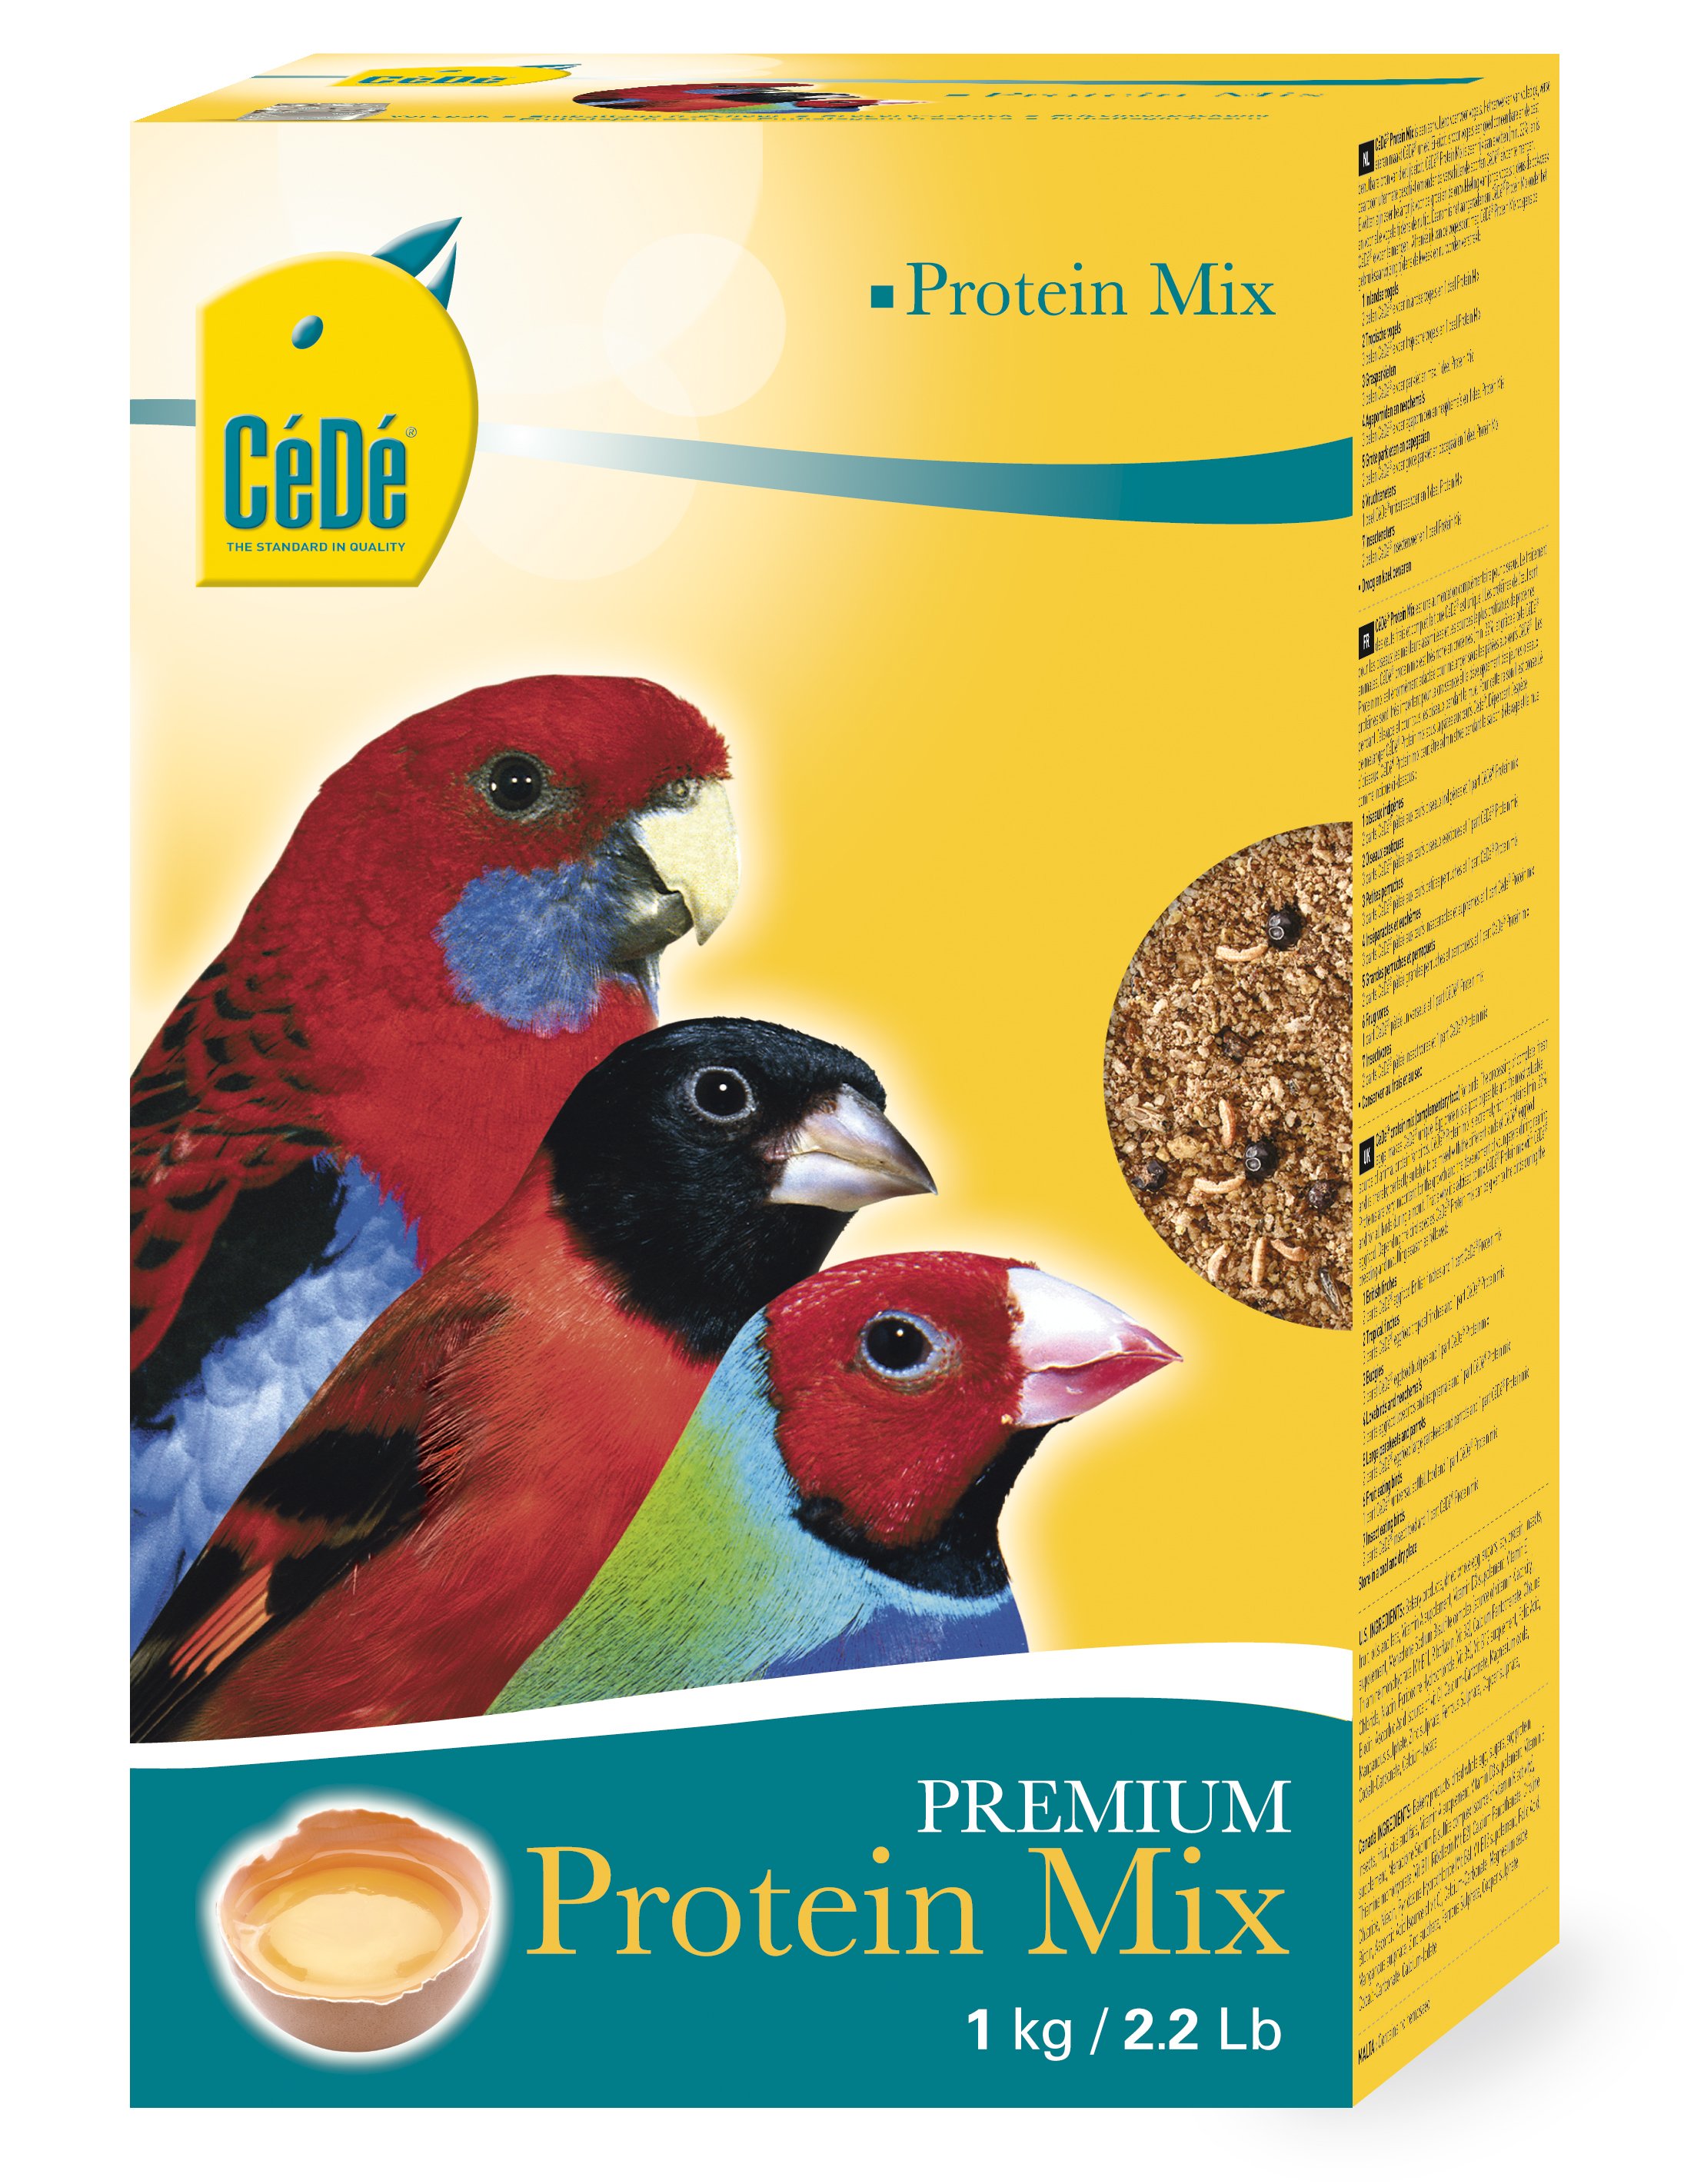 Cédé mix de protéines - Product shot